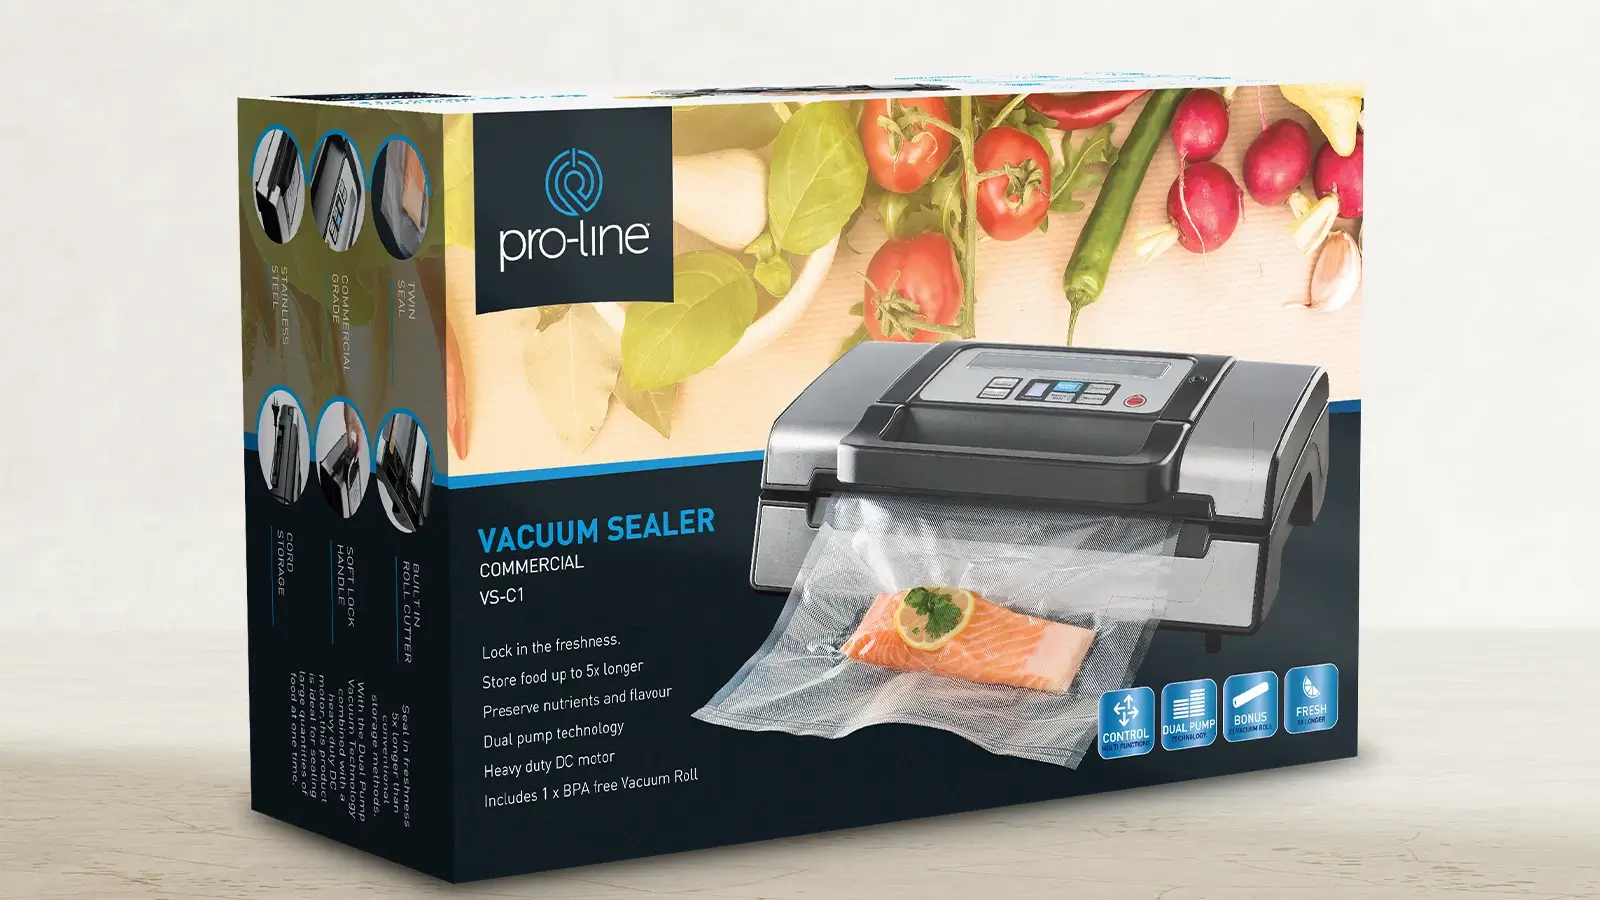 Pro-line Vacuum Sealer Machine Box Design